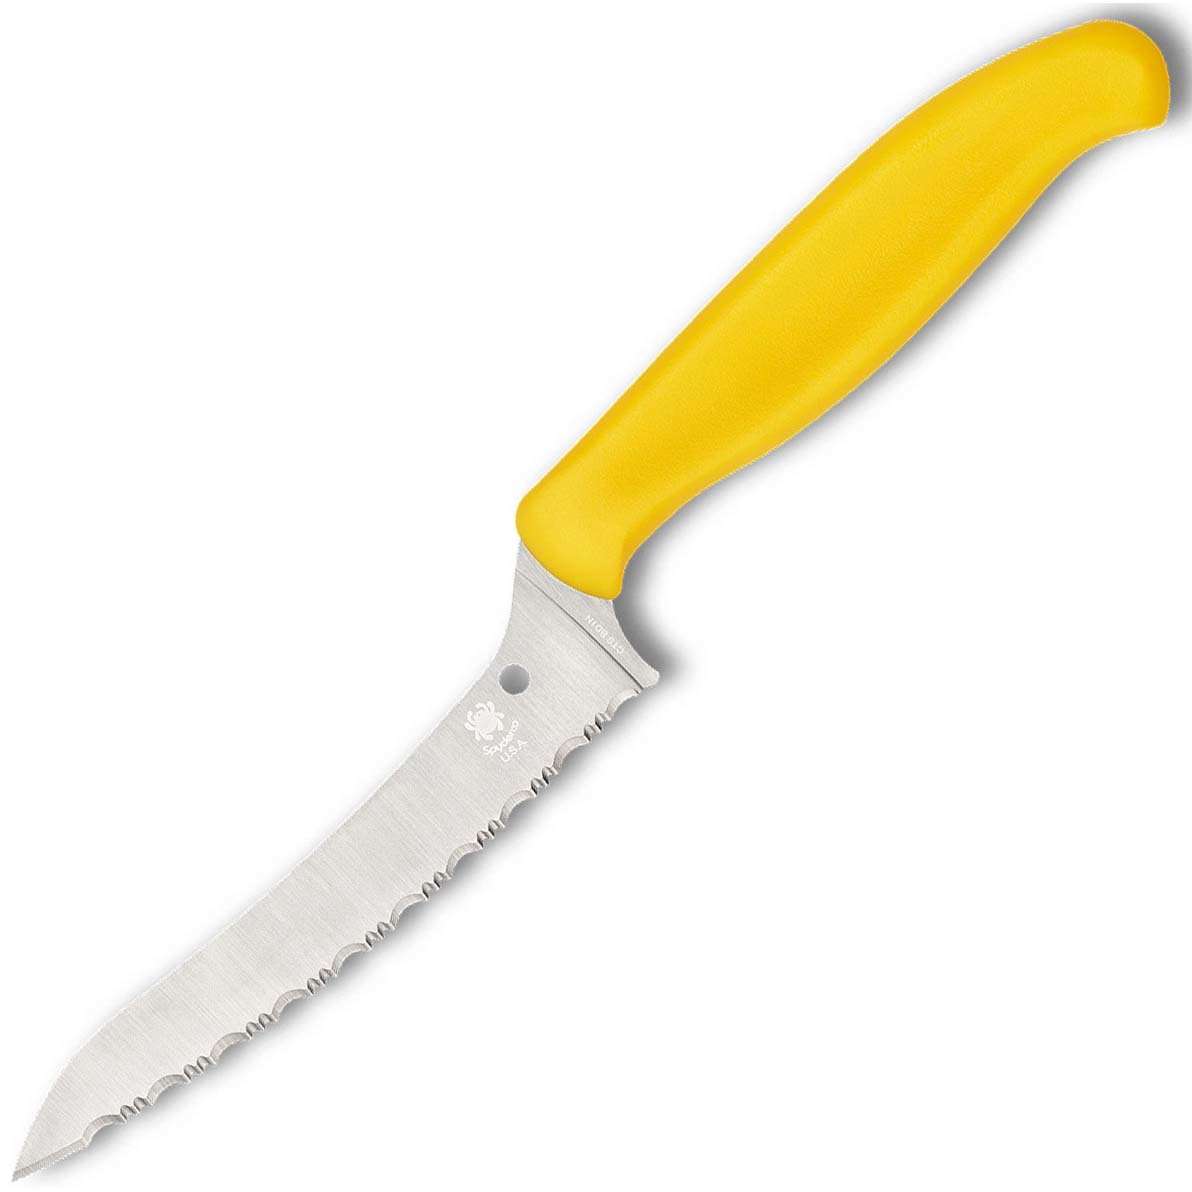 Универсальный кухонный нож Spyderco Z-Cut SpyderEdge Offset Kitchen, сталь CTS - BD1 Alloy, рукоять желтый полипропилен - фото 1